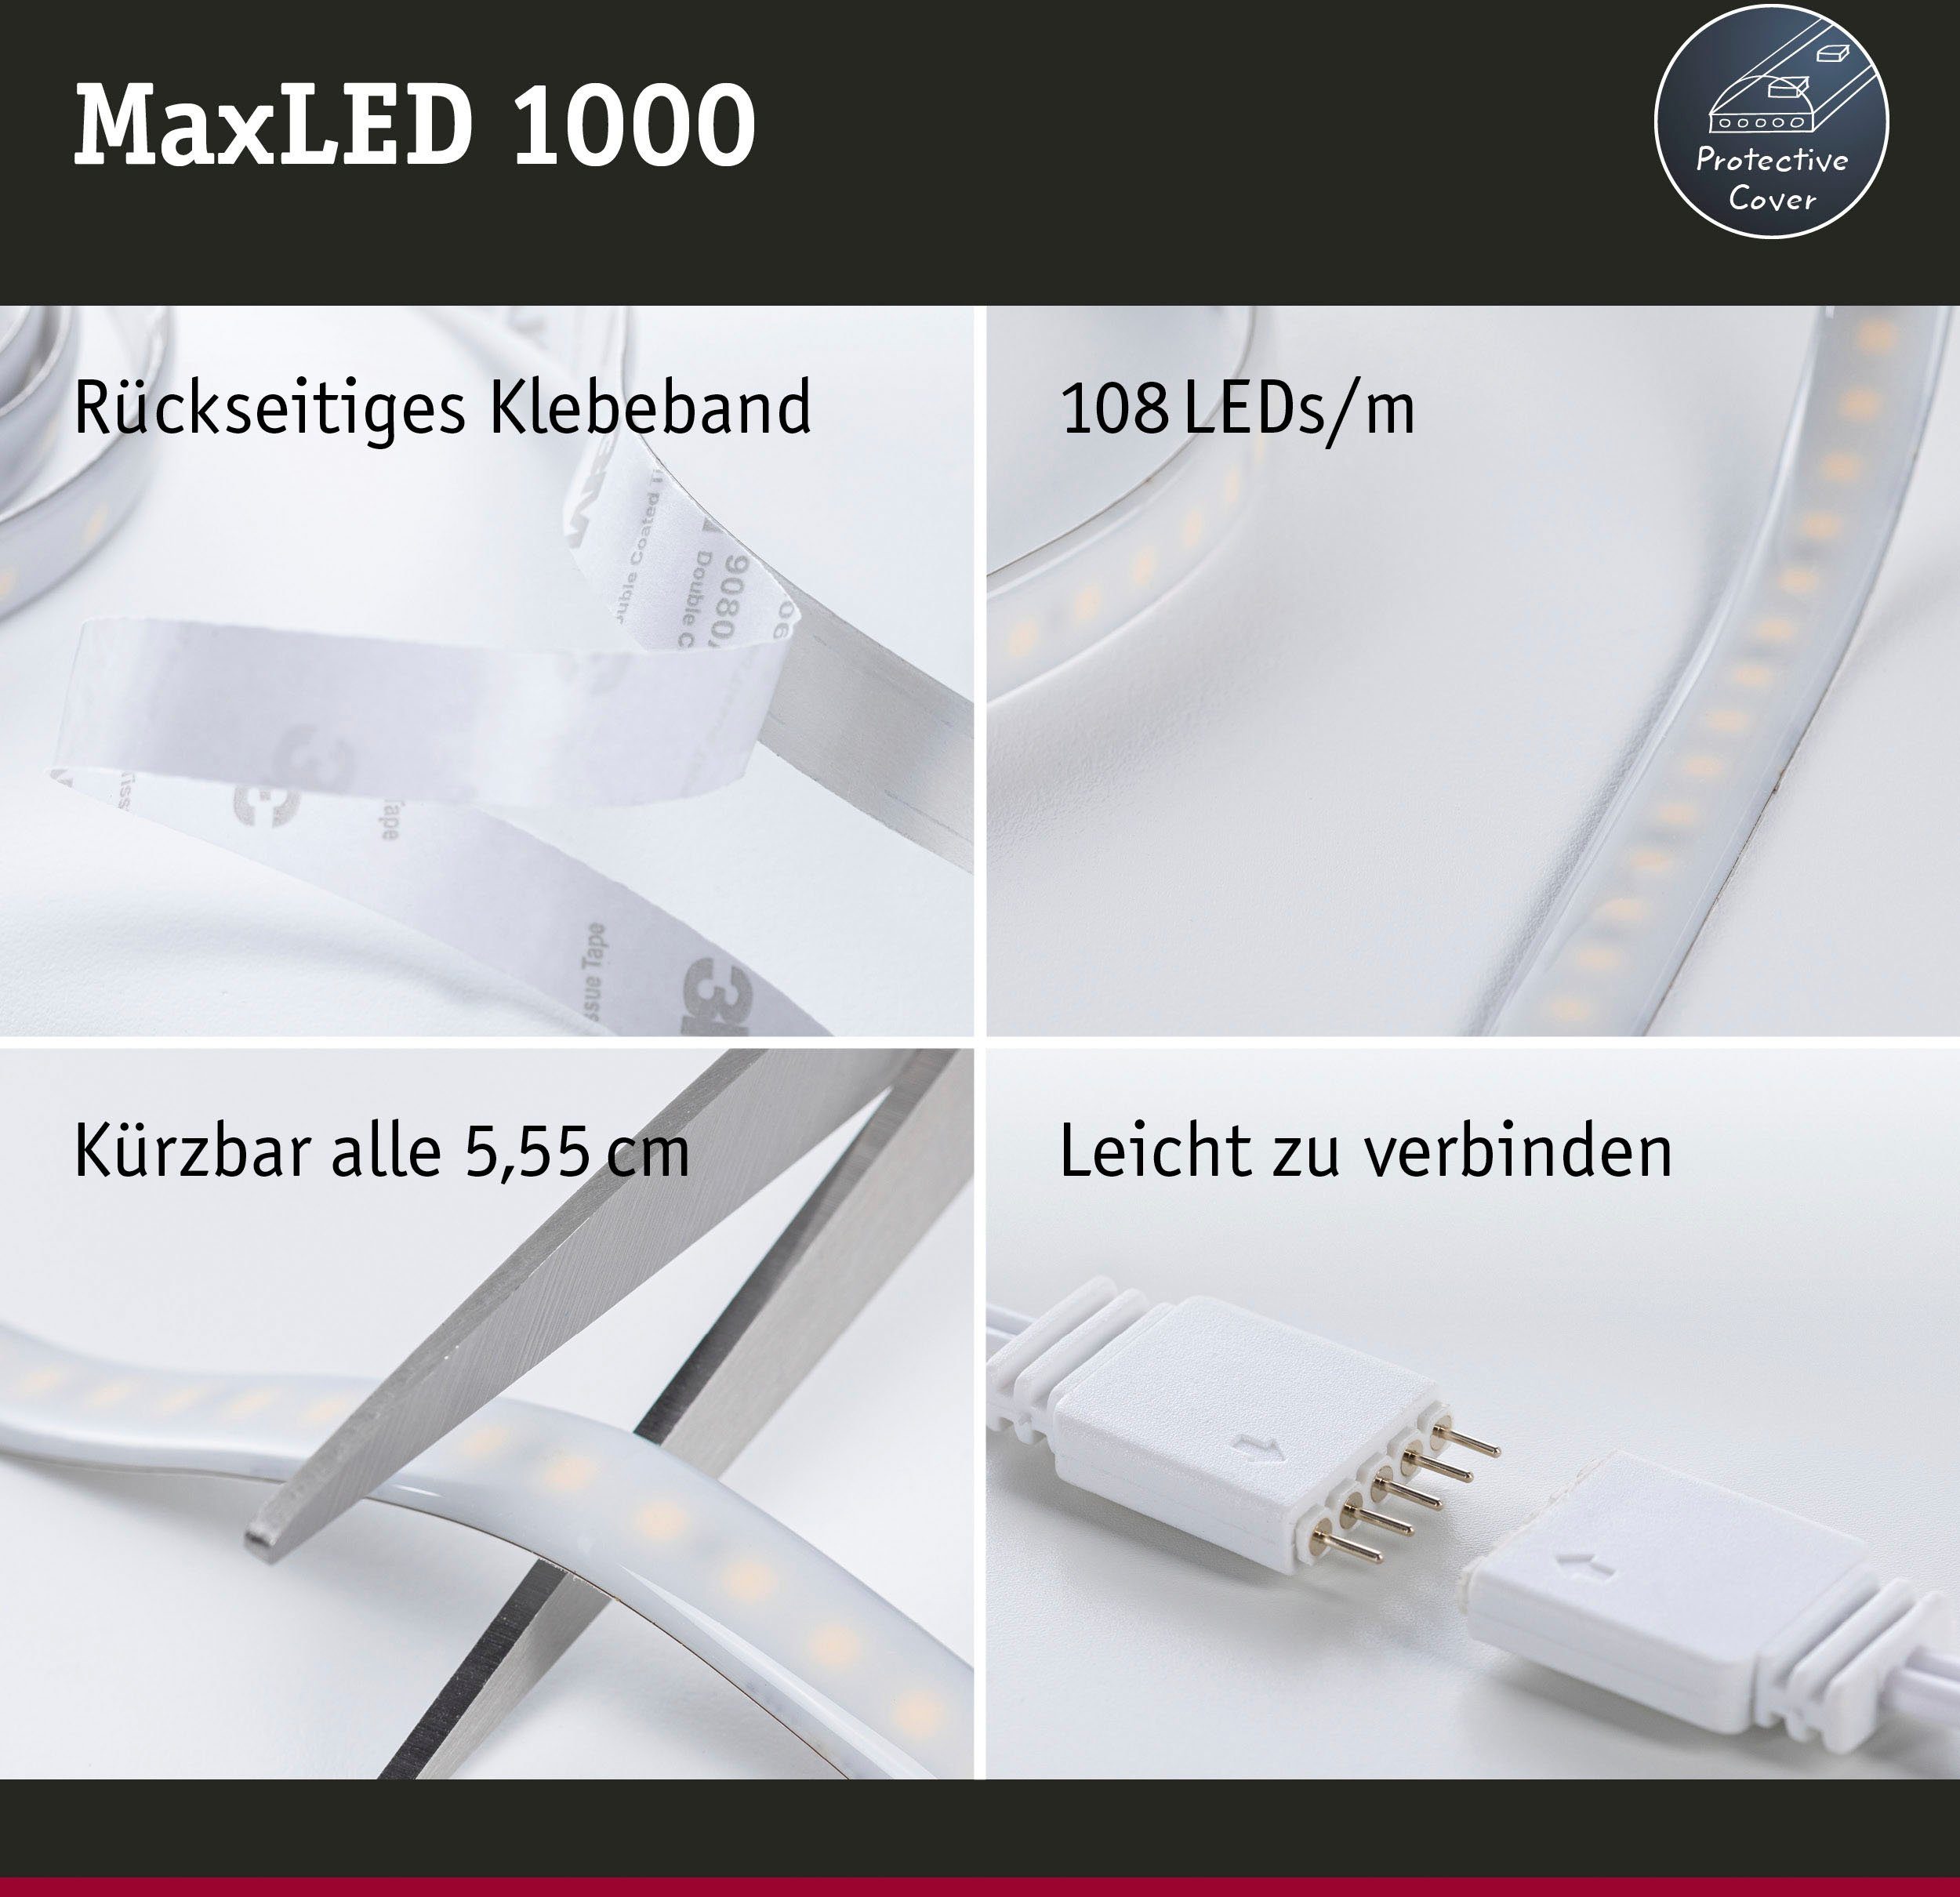 Paulmann LED-Streifen MaxLED1000 Basisset 1,5m IP44 1-flammig, 17W 230/24V 40VA Silber, White Tunable Cover2700-6500K